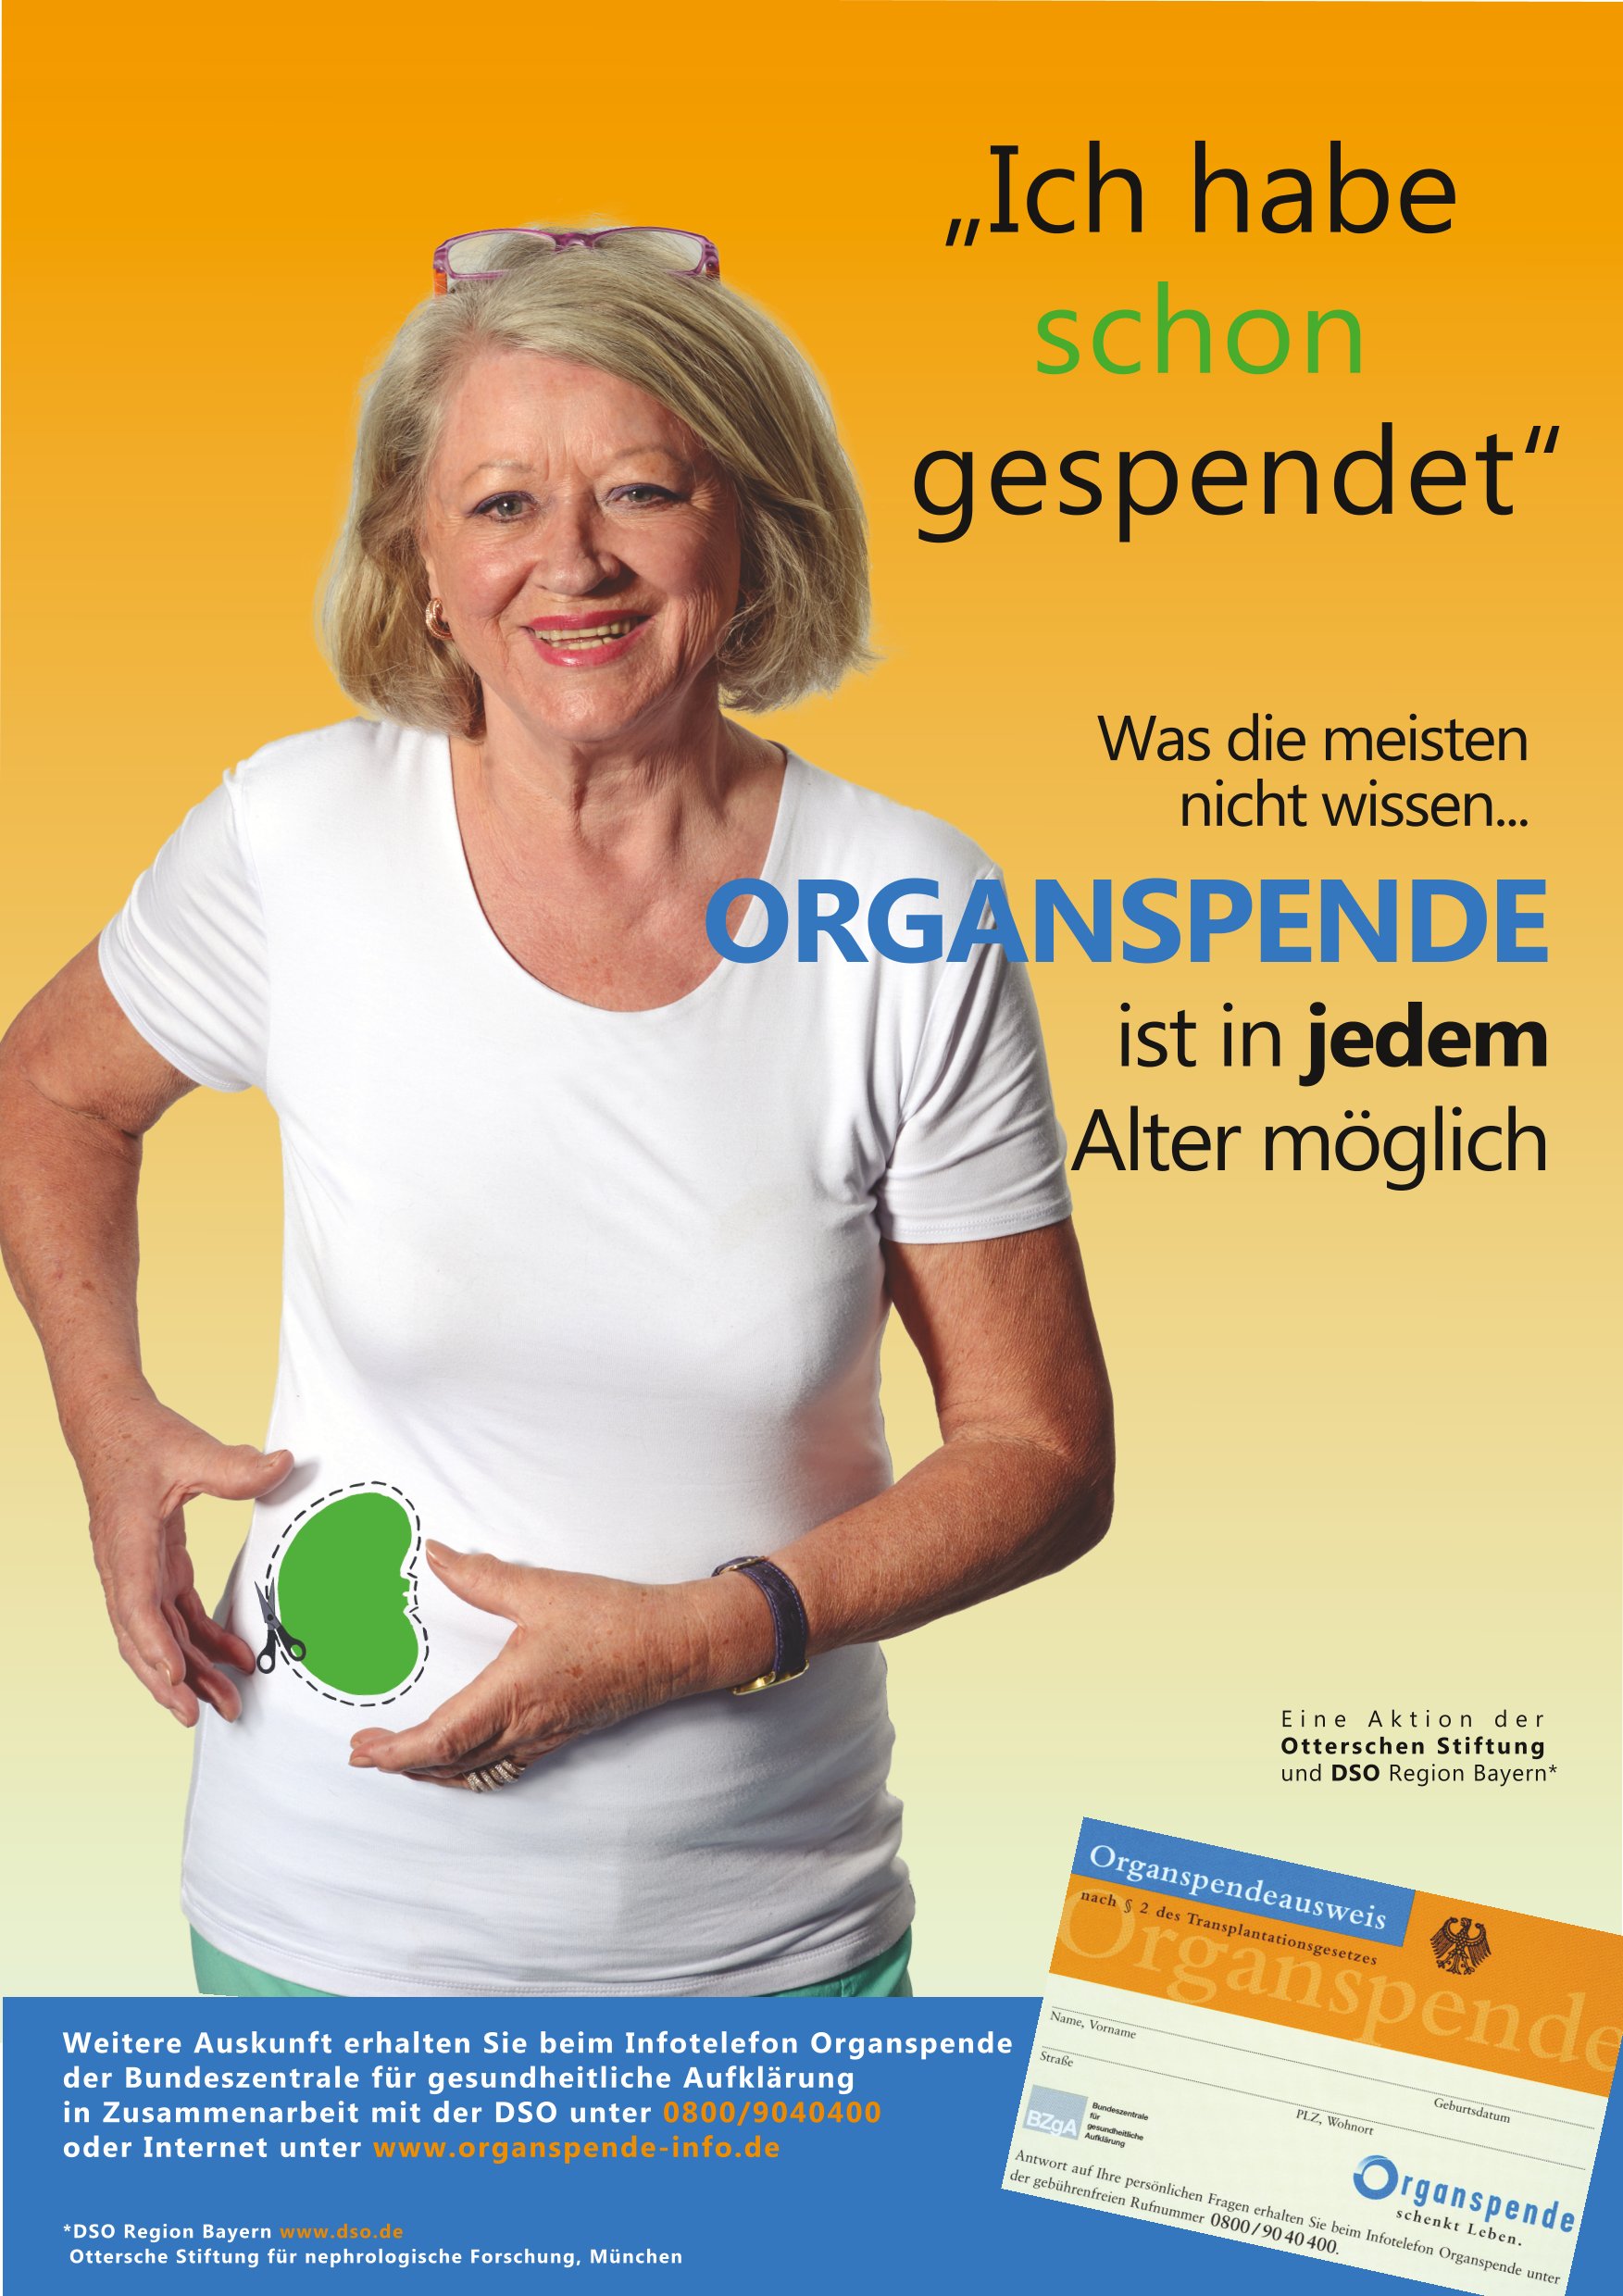 Werbemotiv: Ich habe schon gespendet - Organspende ist in jedem Alter möglich.